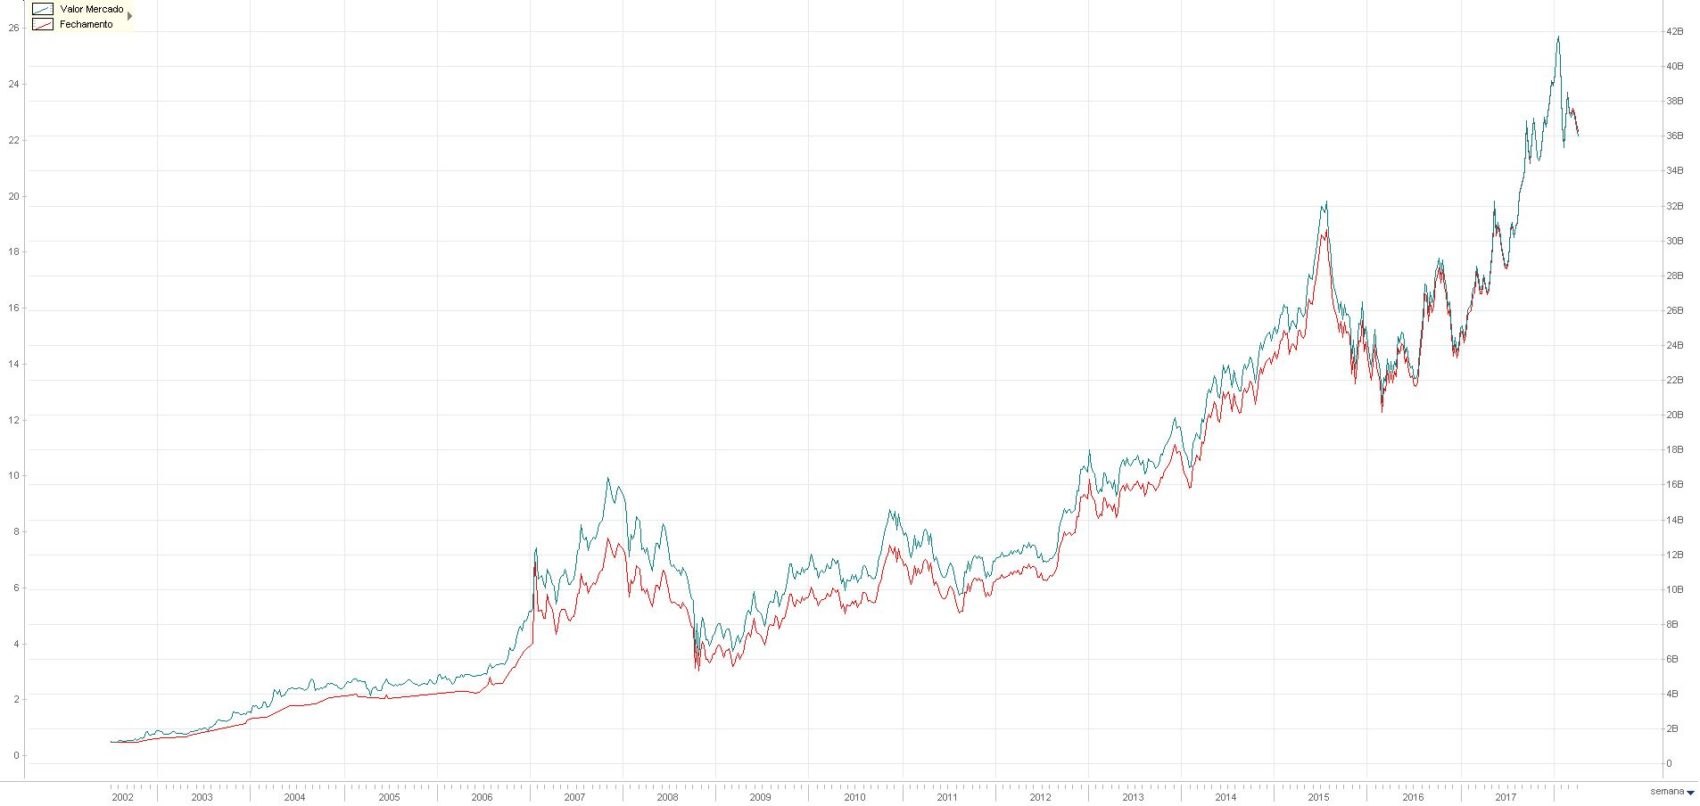 Valor de Mercado (azul) e Cotacao (vermelho) da Wege - Economatica